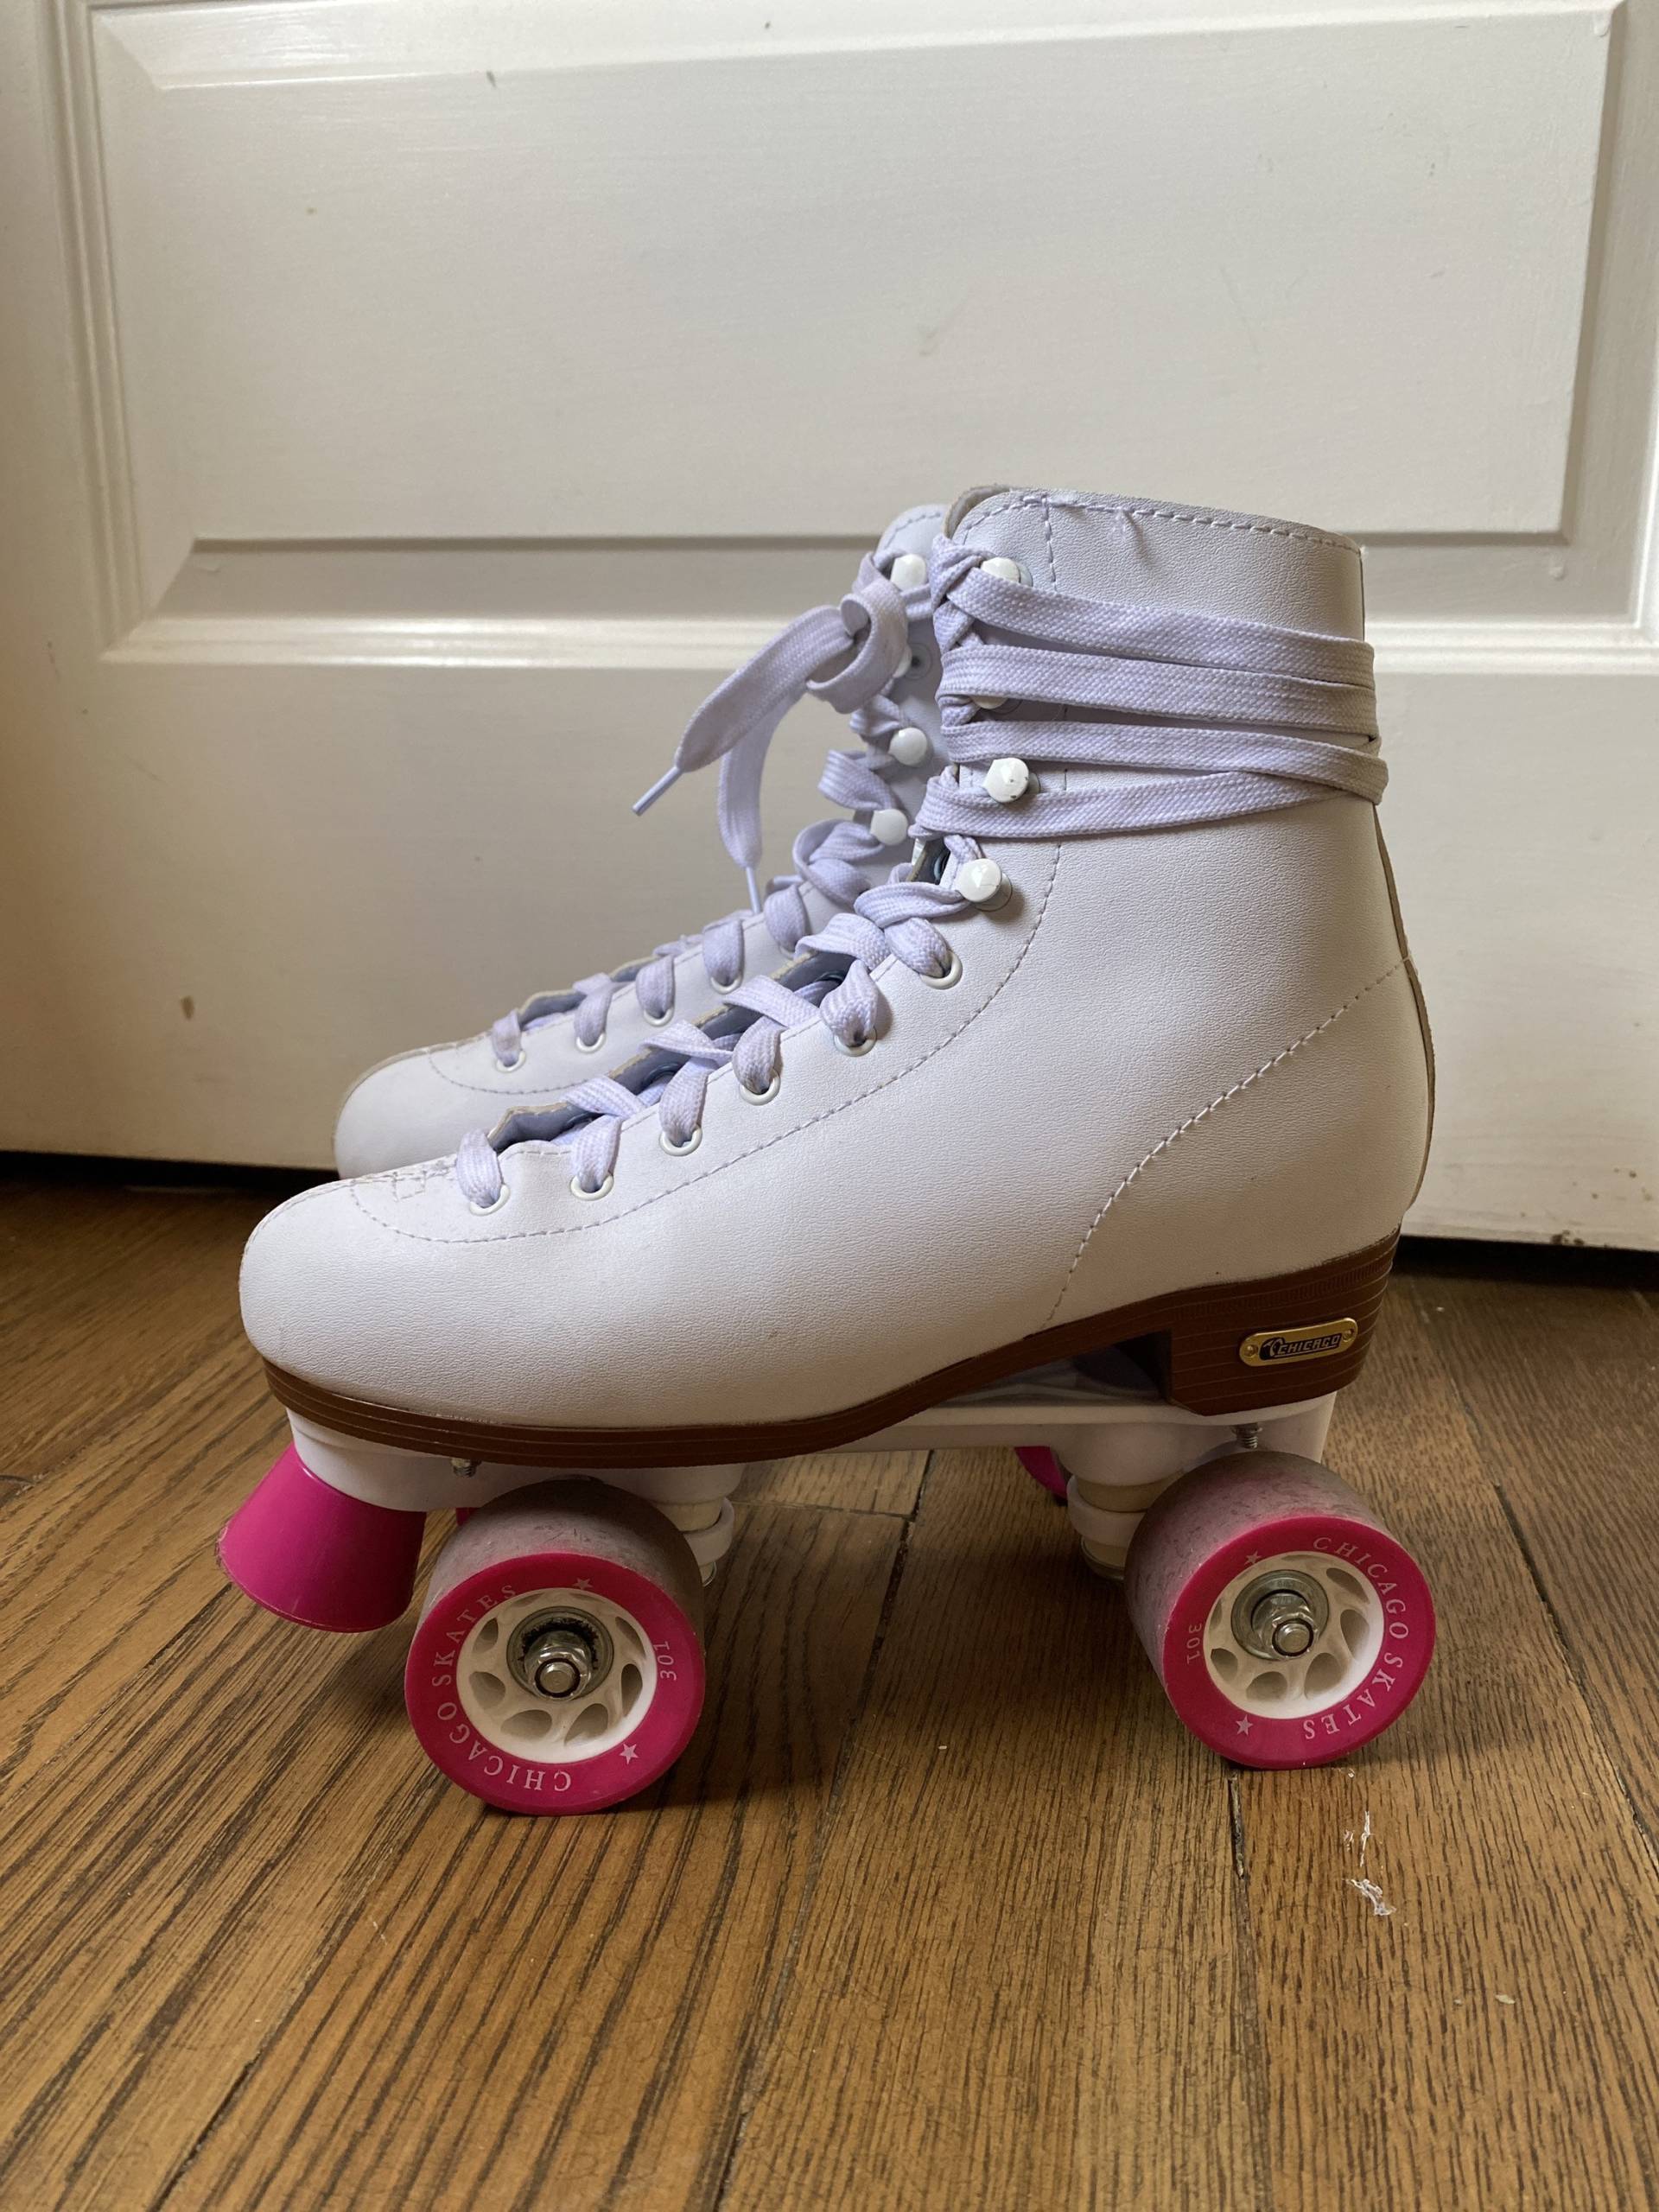 Vintage Damen 7 Chicago Skates Weiß Hohe Stiefel Fußstütze Rosa Räder Trend Roller Derby Quads Schnürung Leder Classic Dance Party von furhatguild